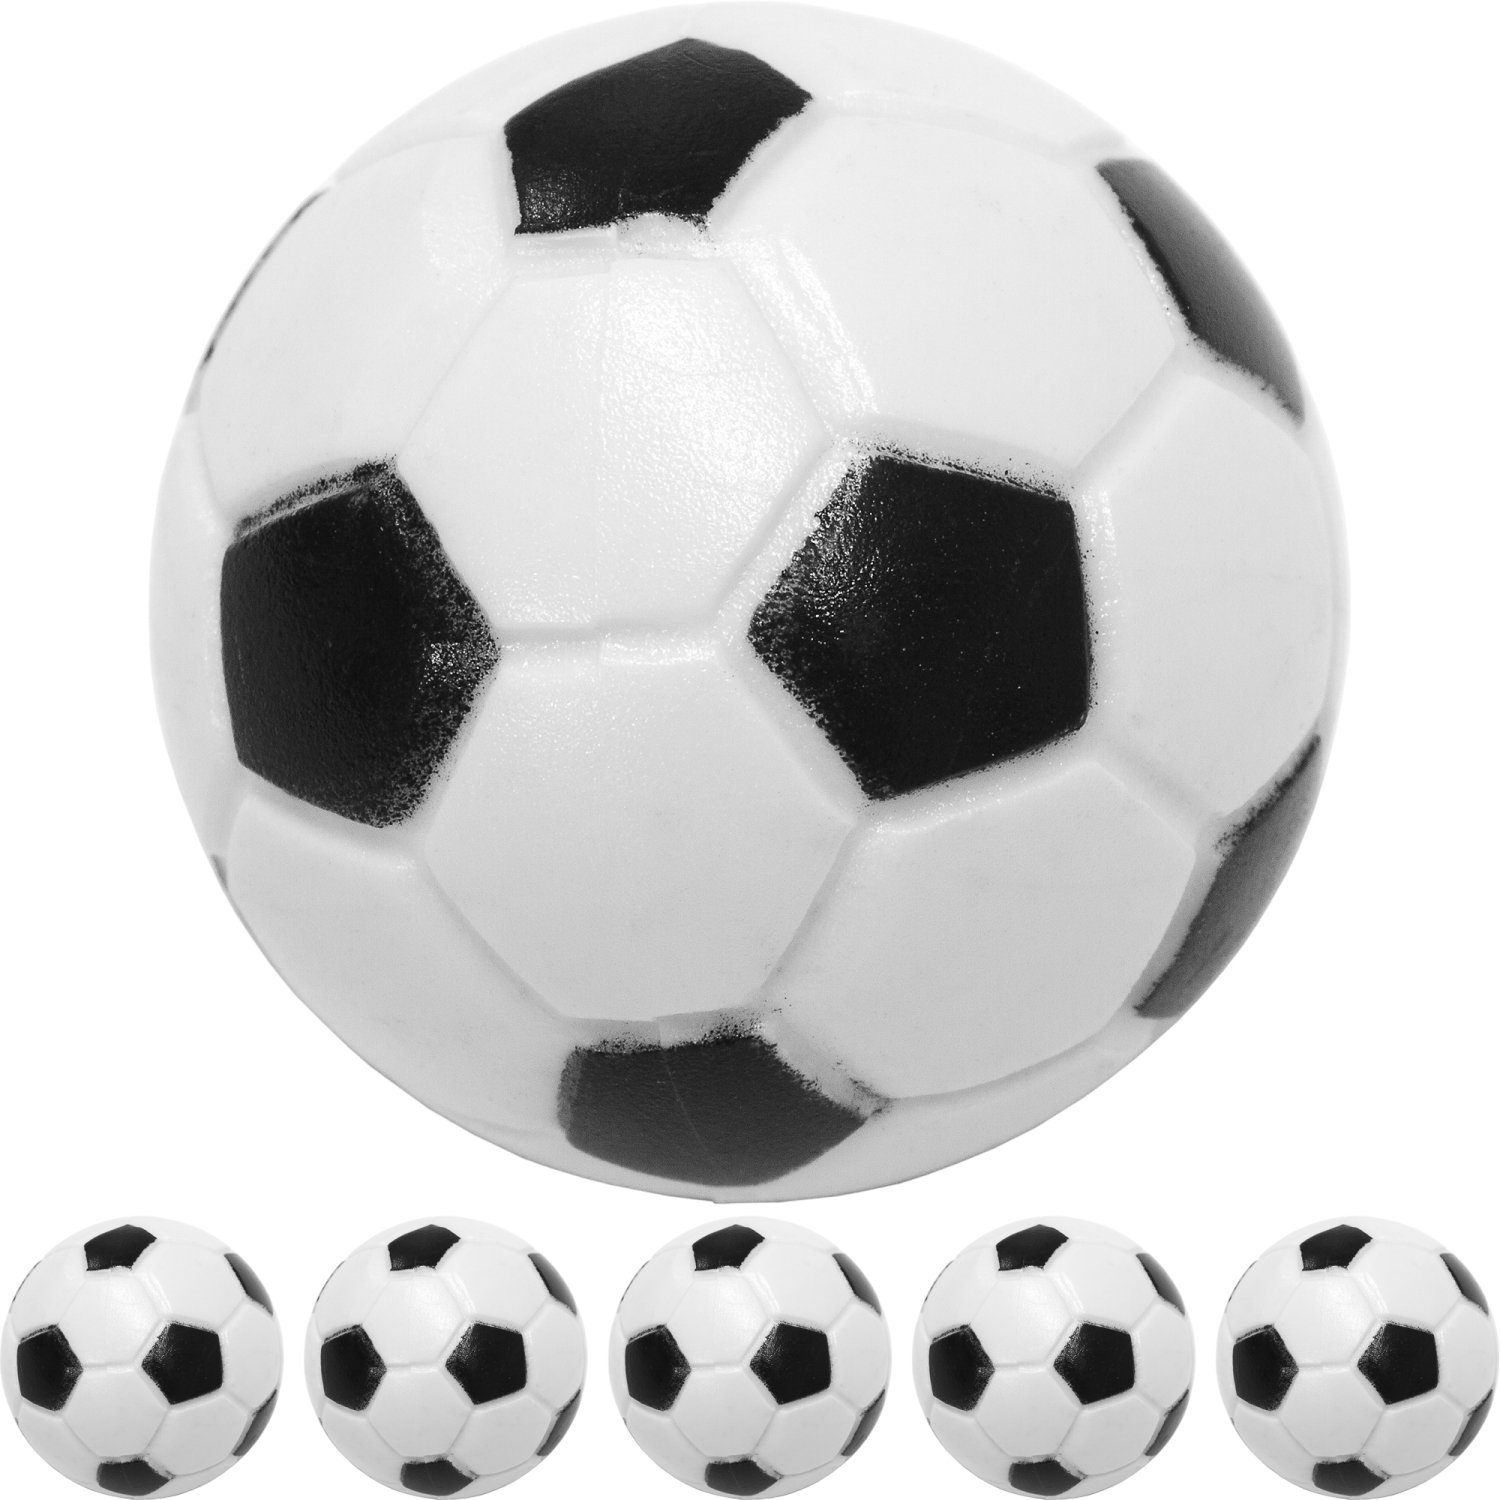 GAMES PLANET Spielball Games Kicker 5er oder (Set, Ball Tischfussball (Klassische hart Stück Bälle, Pack), 5 Kickerbälle schnell, Planet Durchmesser und Farbe: schwarz/weiß Fußball-Optik), 31mm, 10